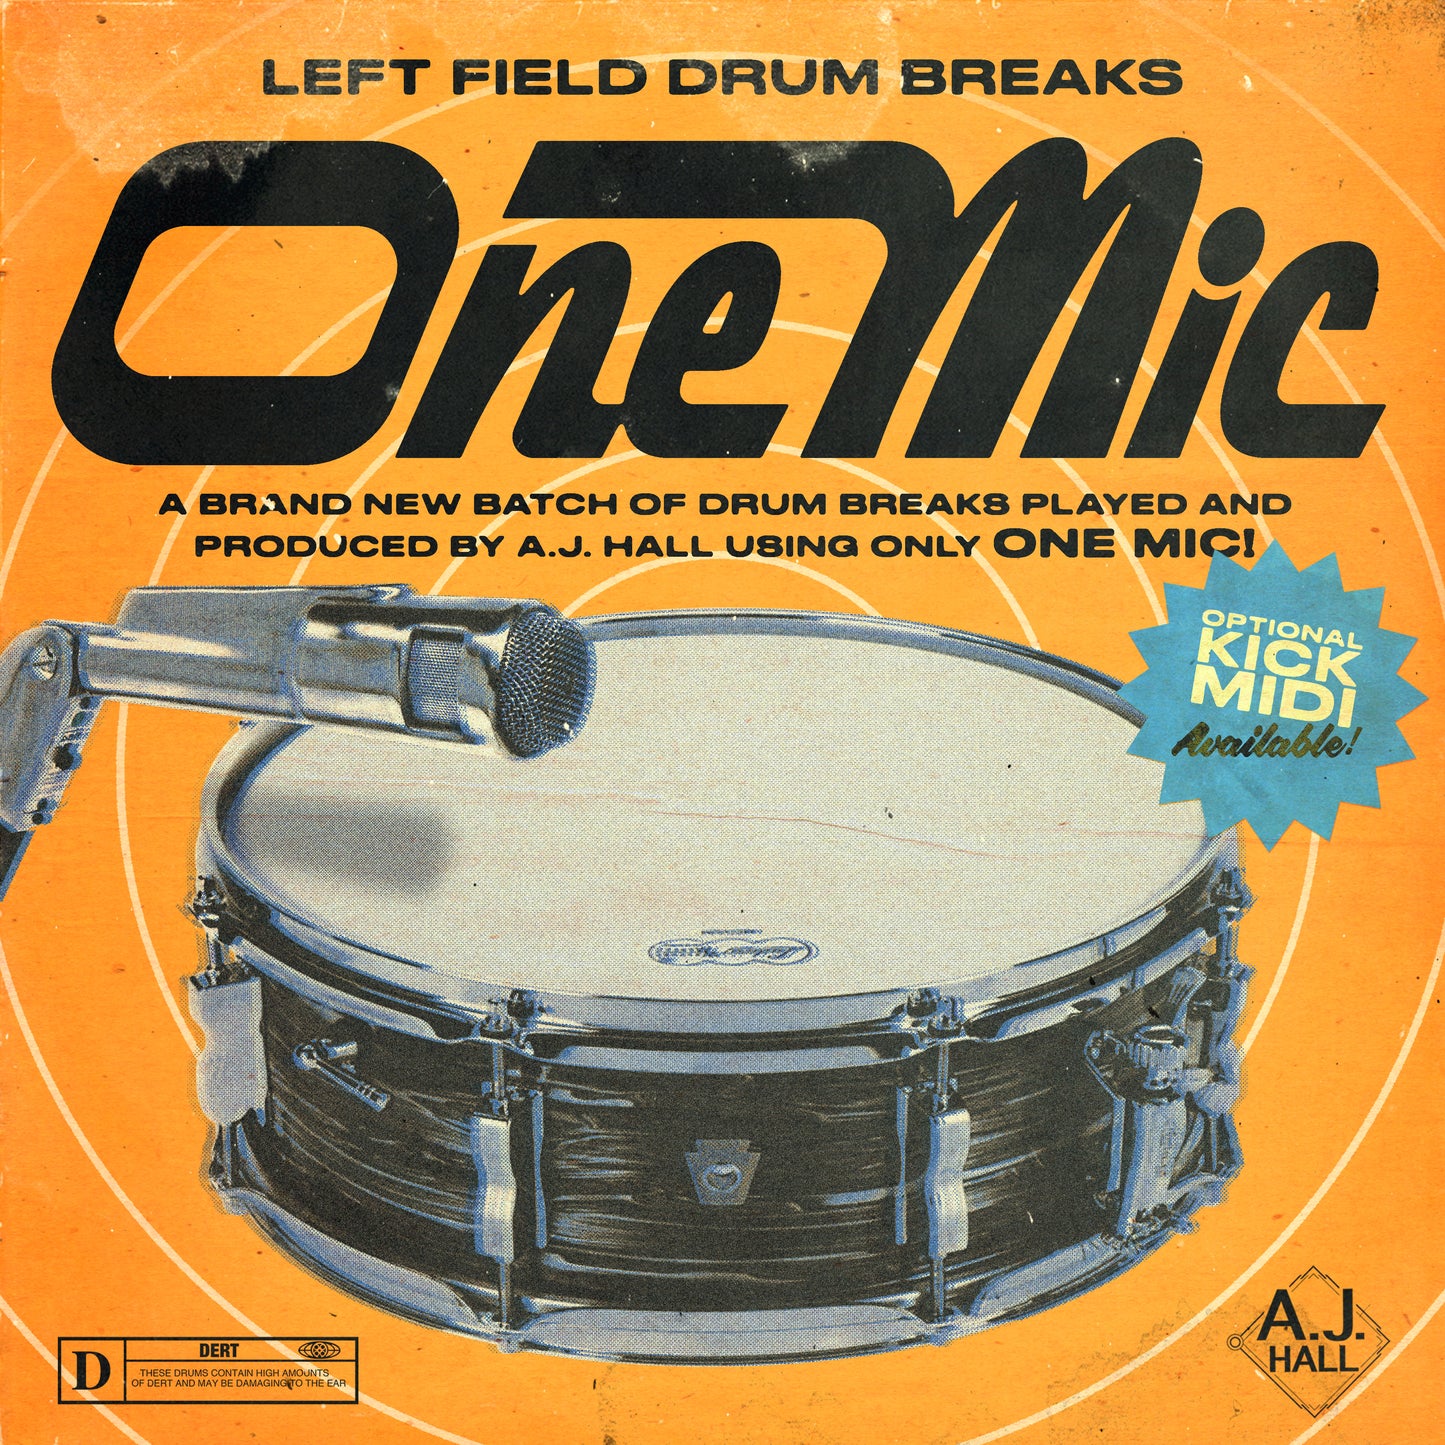 "ONE MIC" DRUM BREAKS W/ KICK MIDI!